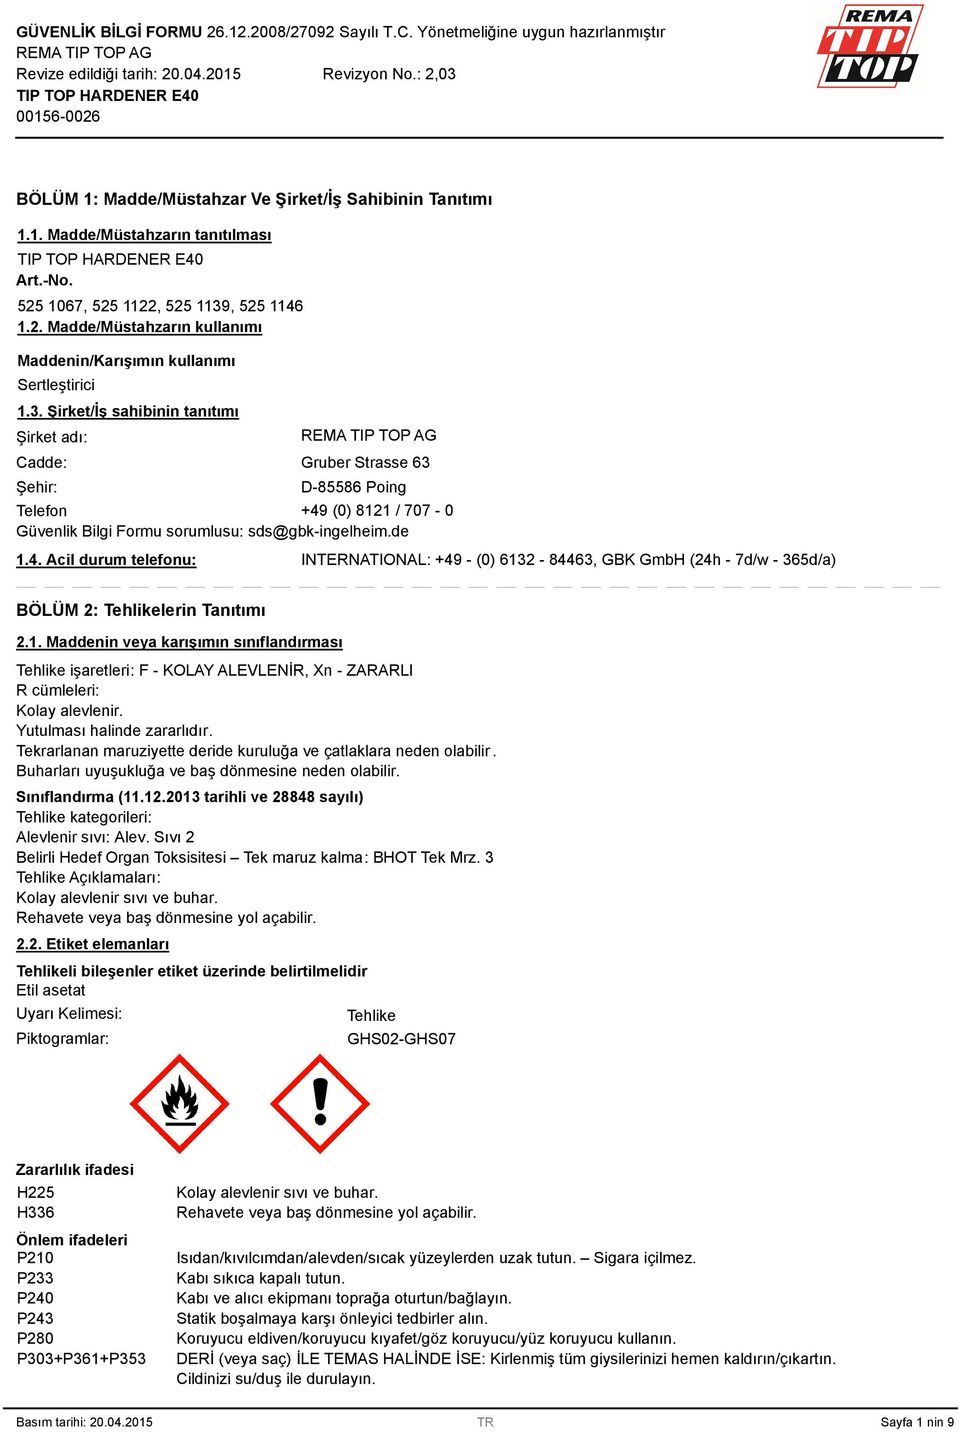 (0) 8121 / 707-0 Güvenlik Bilgi Formu sorumlusu: sds@gbk-ingelheim.de 1.4. Acil durum telefonu: INTERNATIONAL: +49 - (0) 612-8446, GBK GmbH (24h - 7d/w - 65d/a) BÖLÜM 2: Tehlikelerin Tanıtımı 2.1. Maddenin veya karışımın sınıflandırması Tehlike işaretleri: F - KOLAY ALEVLENİR, Xn - ZARARLI R cümleleri: Kolay alevlenir.